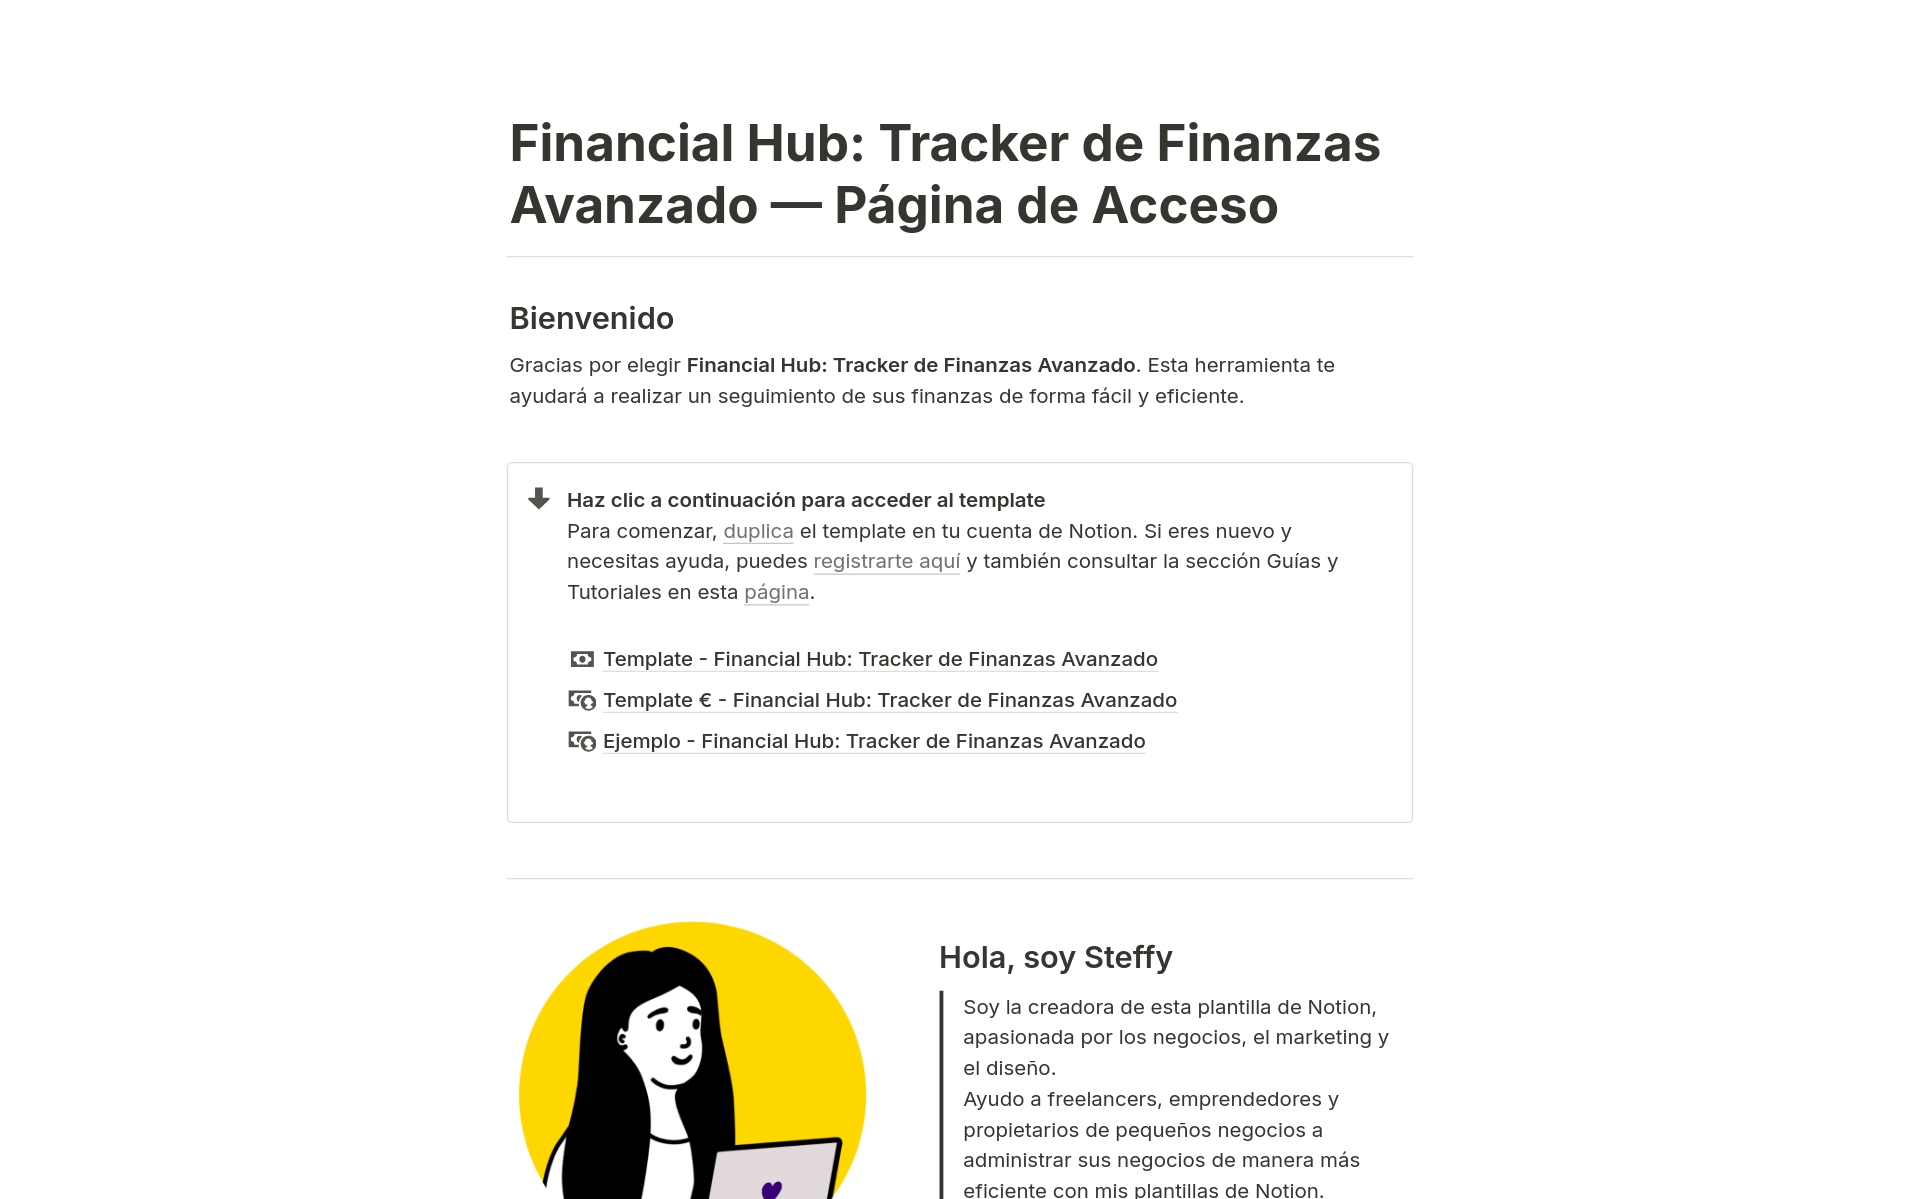 A template preview for Tracker de Finanzas Avanzado